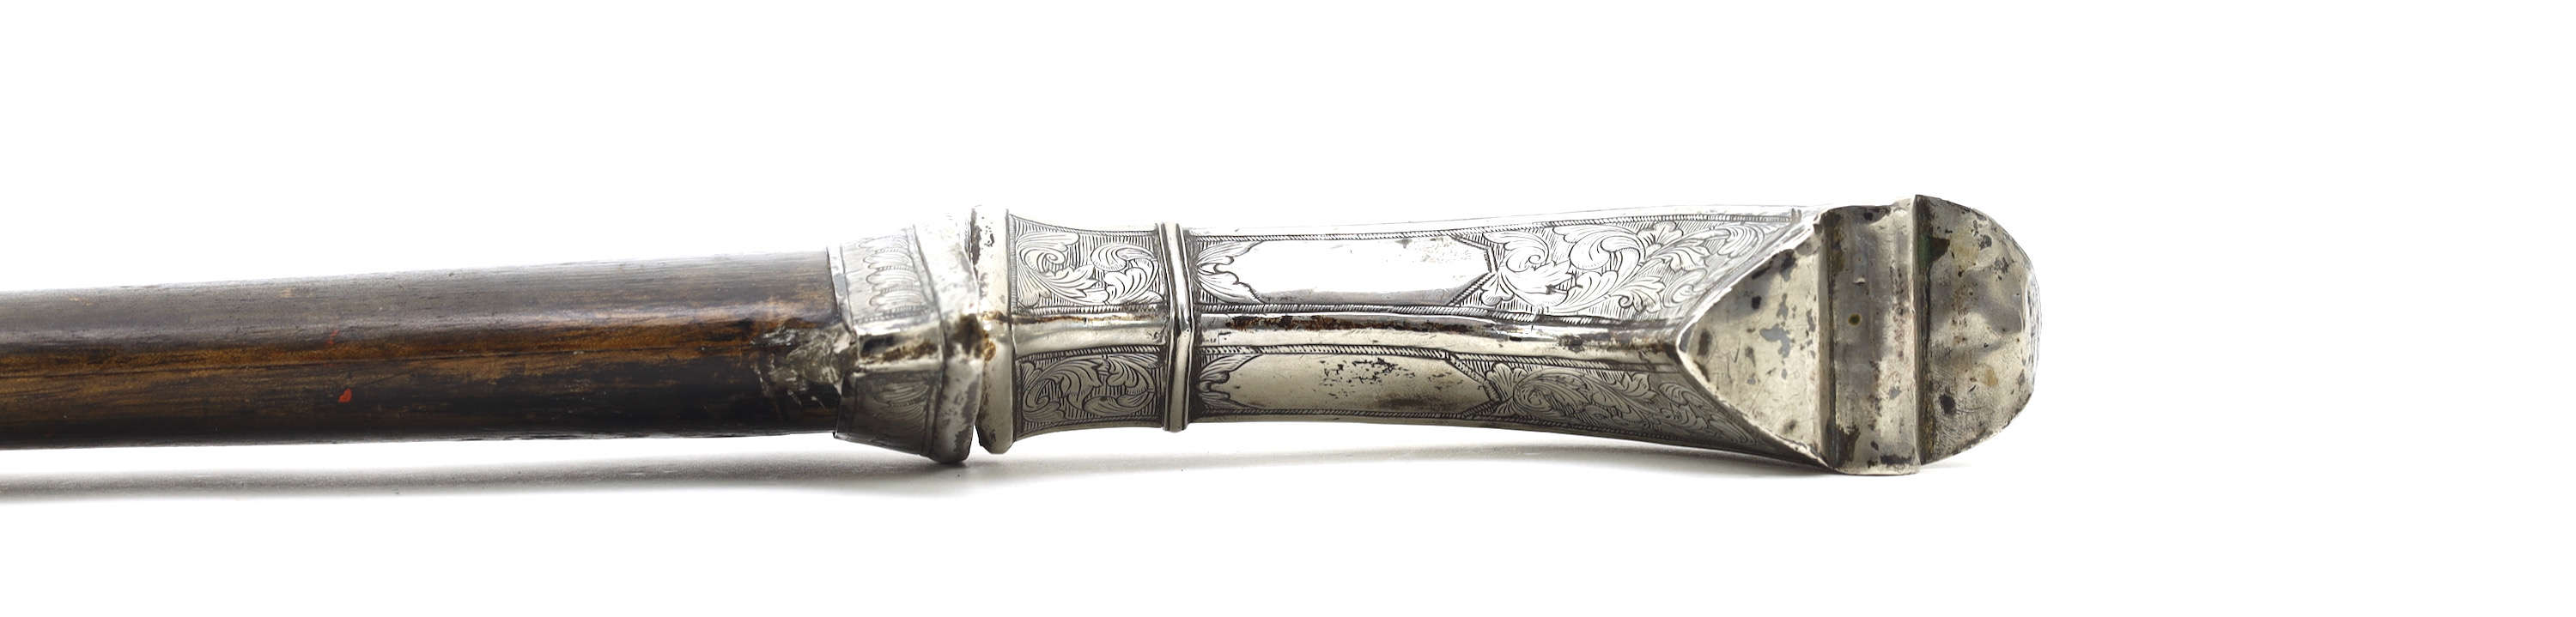 Preanger gobang sword with dated VOC blade